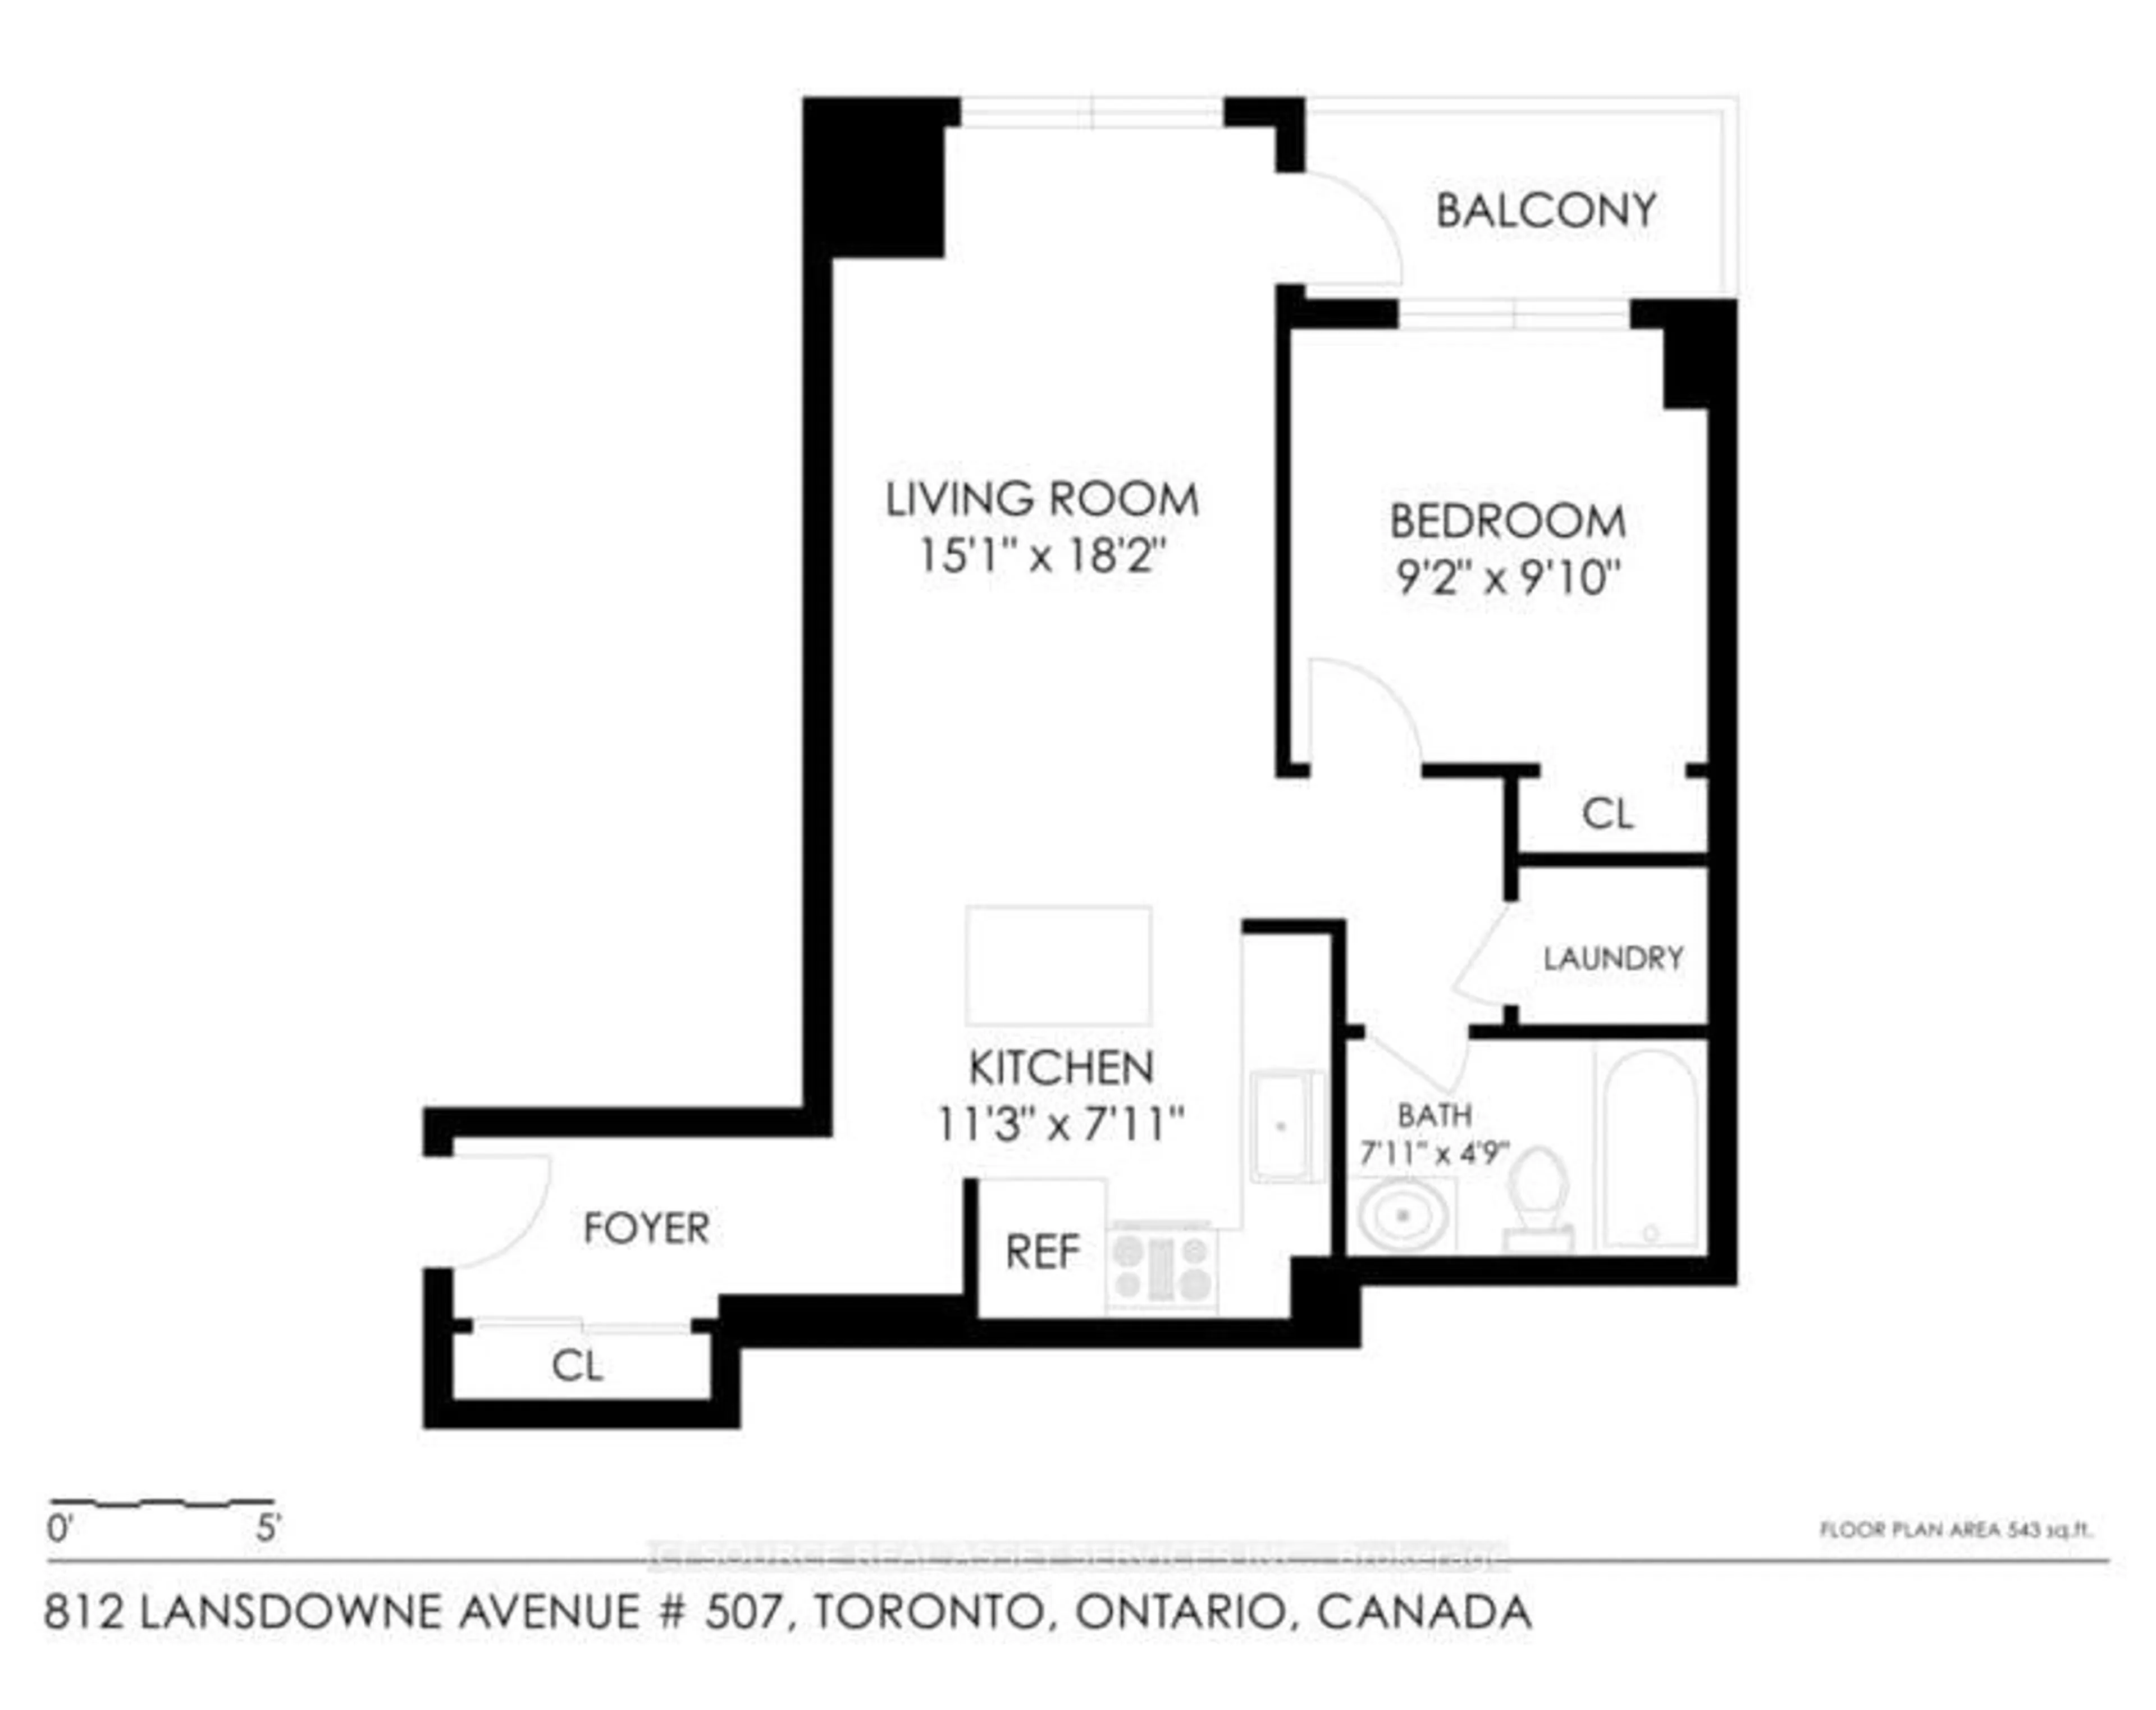 Floor plan for 812 Lansdowne Ave #707, Toronto Ontario M6H 4K5